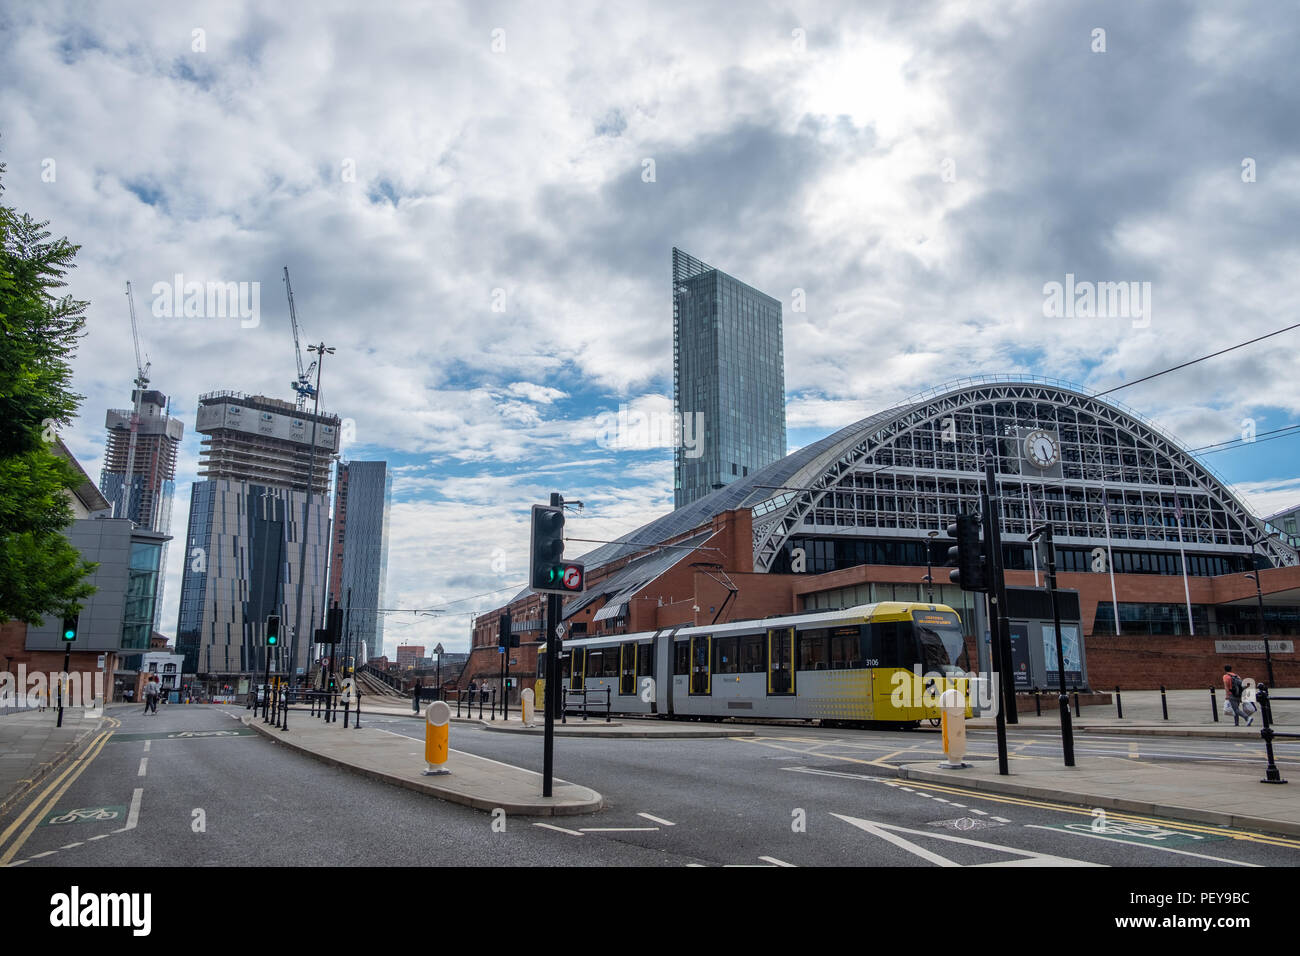 Manchester, Großbritannien - 21. Juli 2018: Die Manchester Central Convention Complex im Vordergrund und umfangreiche Bauarbeiten im Hintergrund. Stockfoto